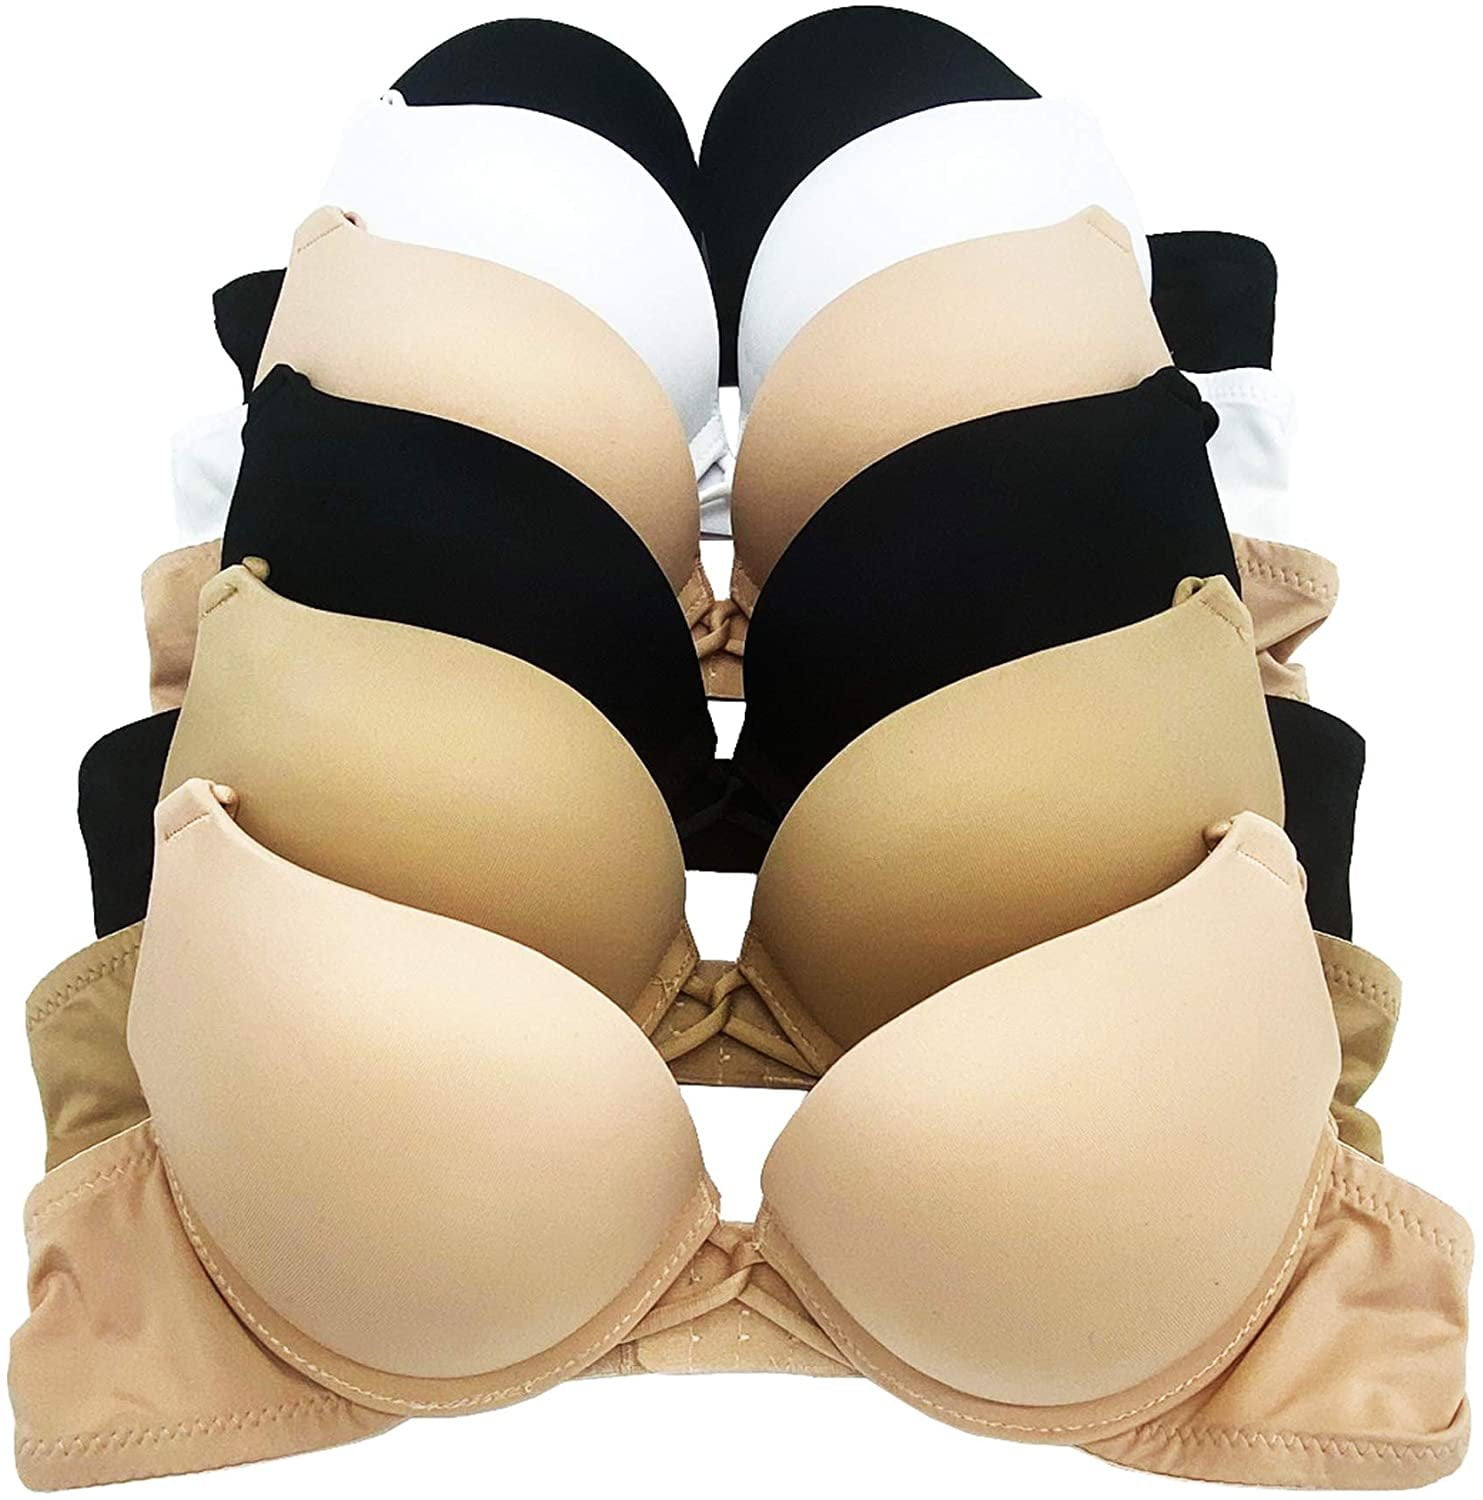 royal.intimates - Censored double padded push-up bra Size: 38C